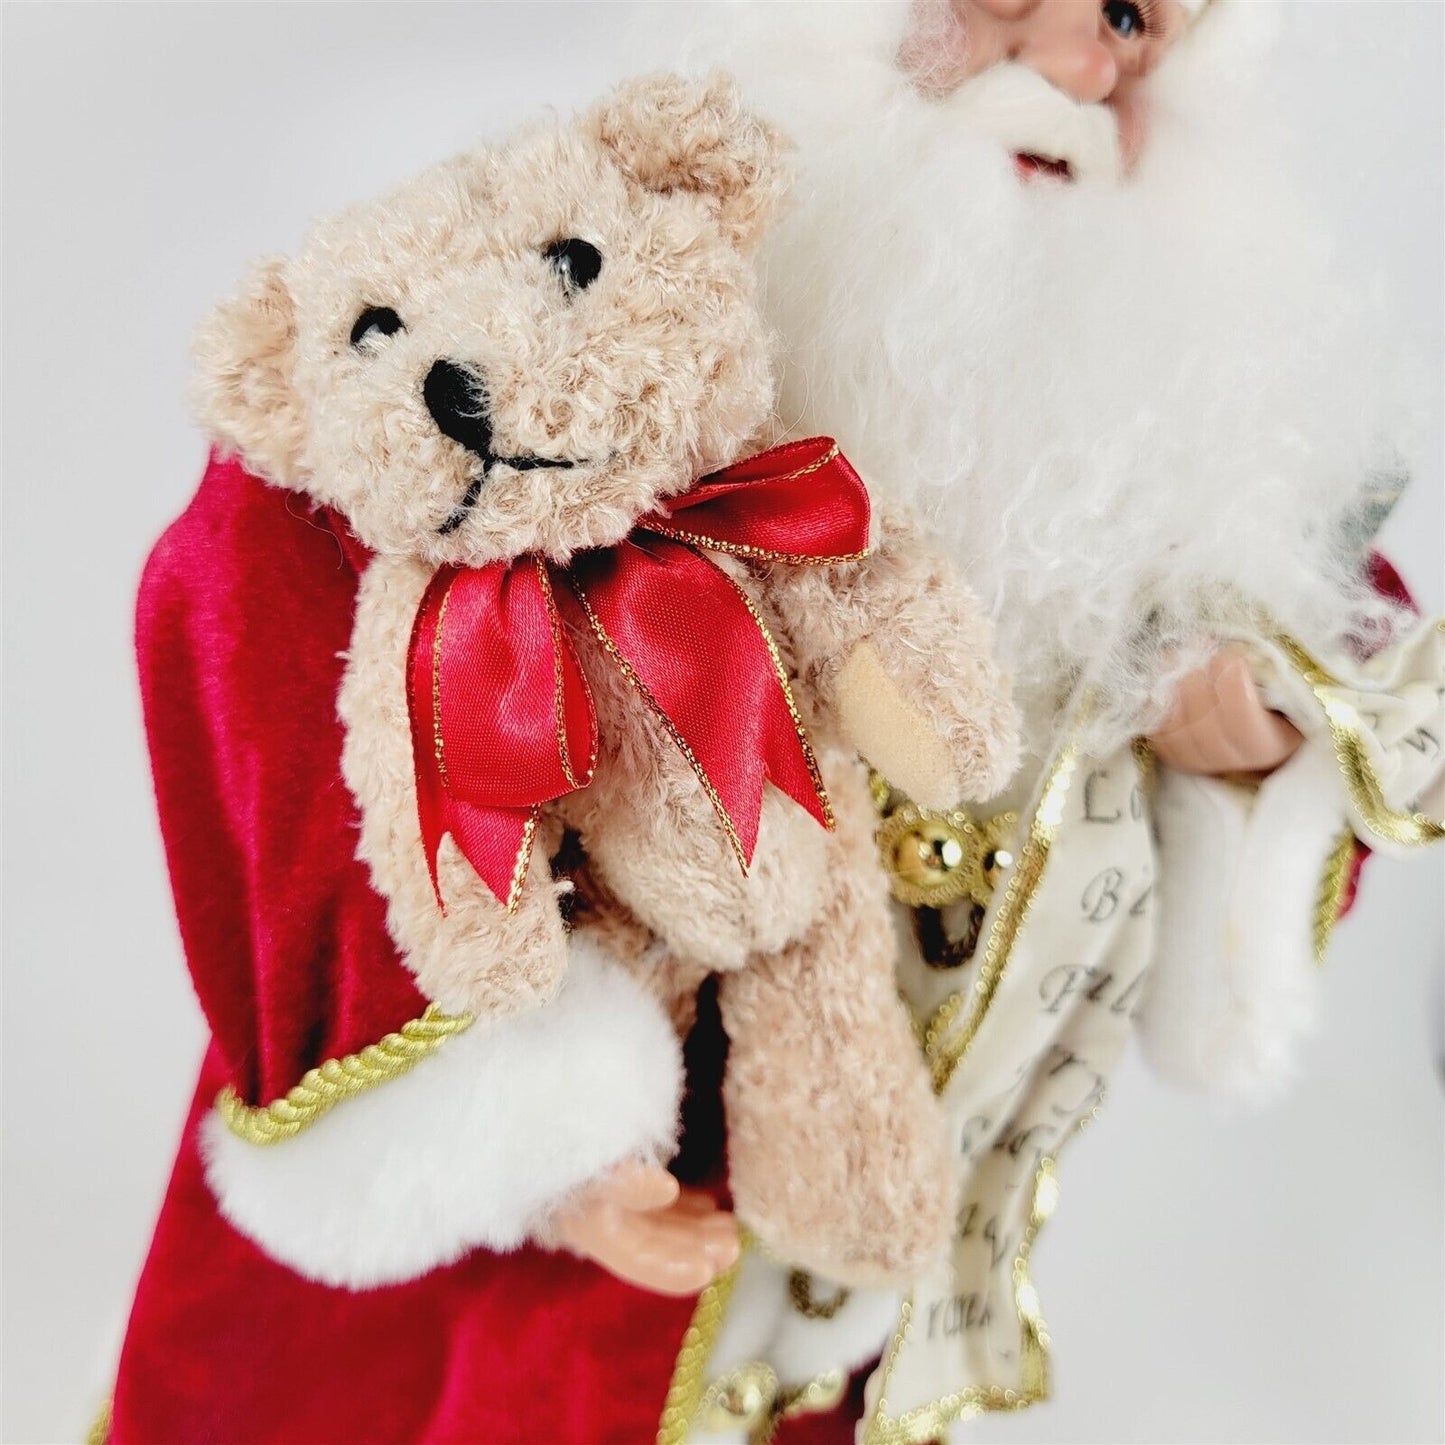 Santa Claus Figurine with Name List Christmas Holiday Decor Teddy Nutcracker 18"